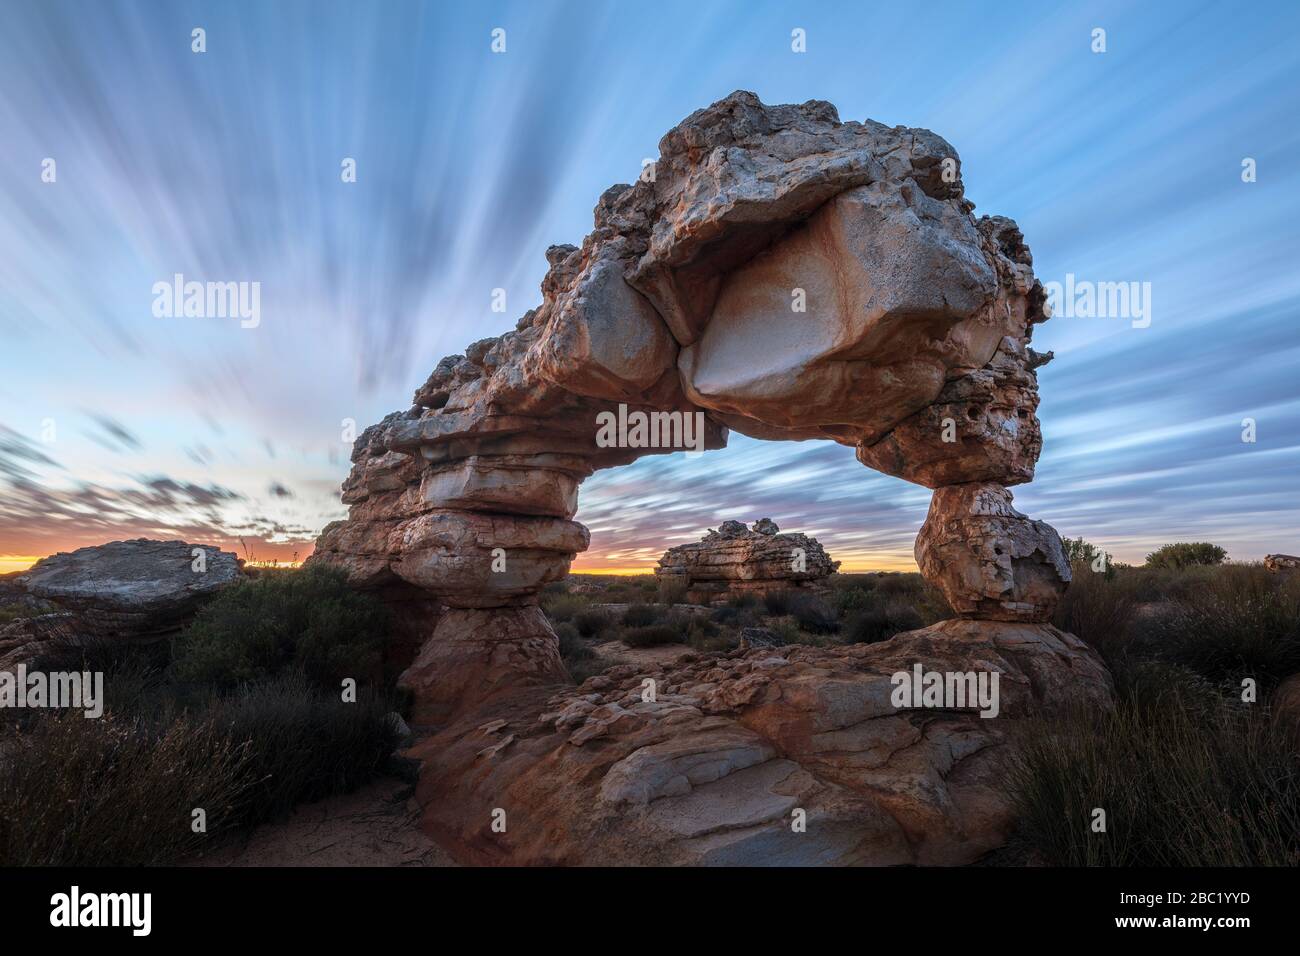 Una fotografía espectacular del paisaje de un increíble arco de roca antes del amanecer, con nubes en movimiento rápido contra un cielo azul, tomada en la montaña Cederberg Foto de stock